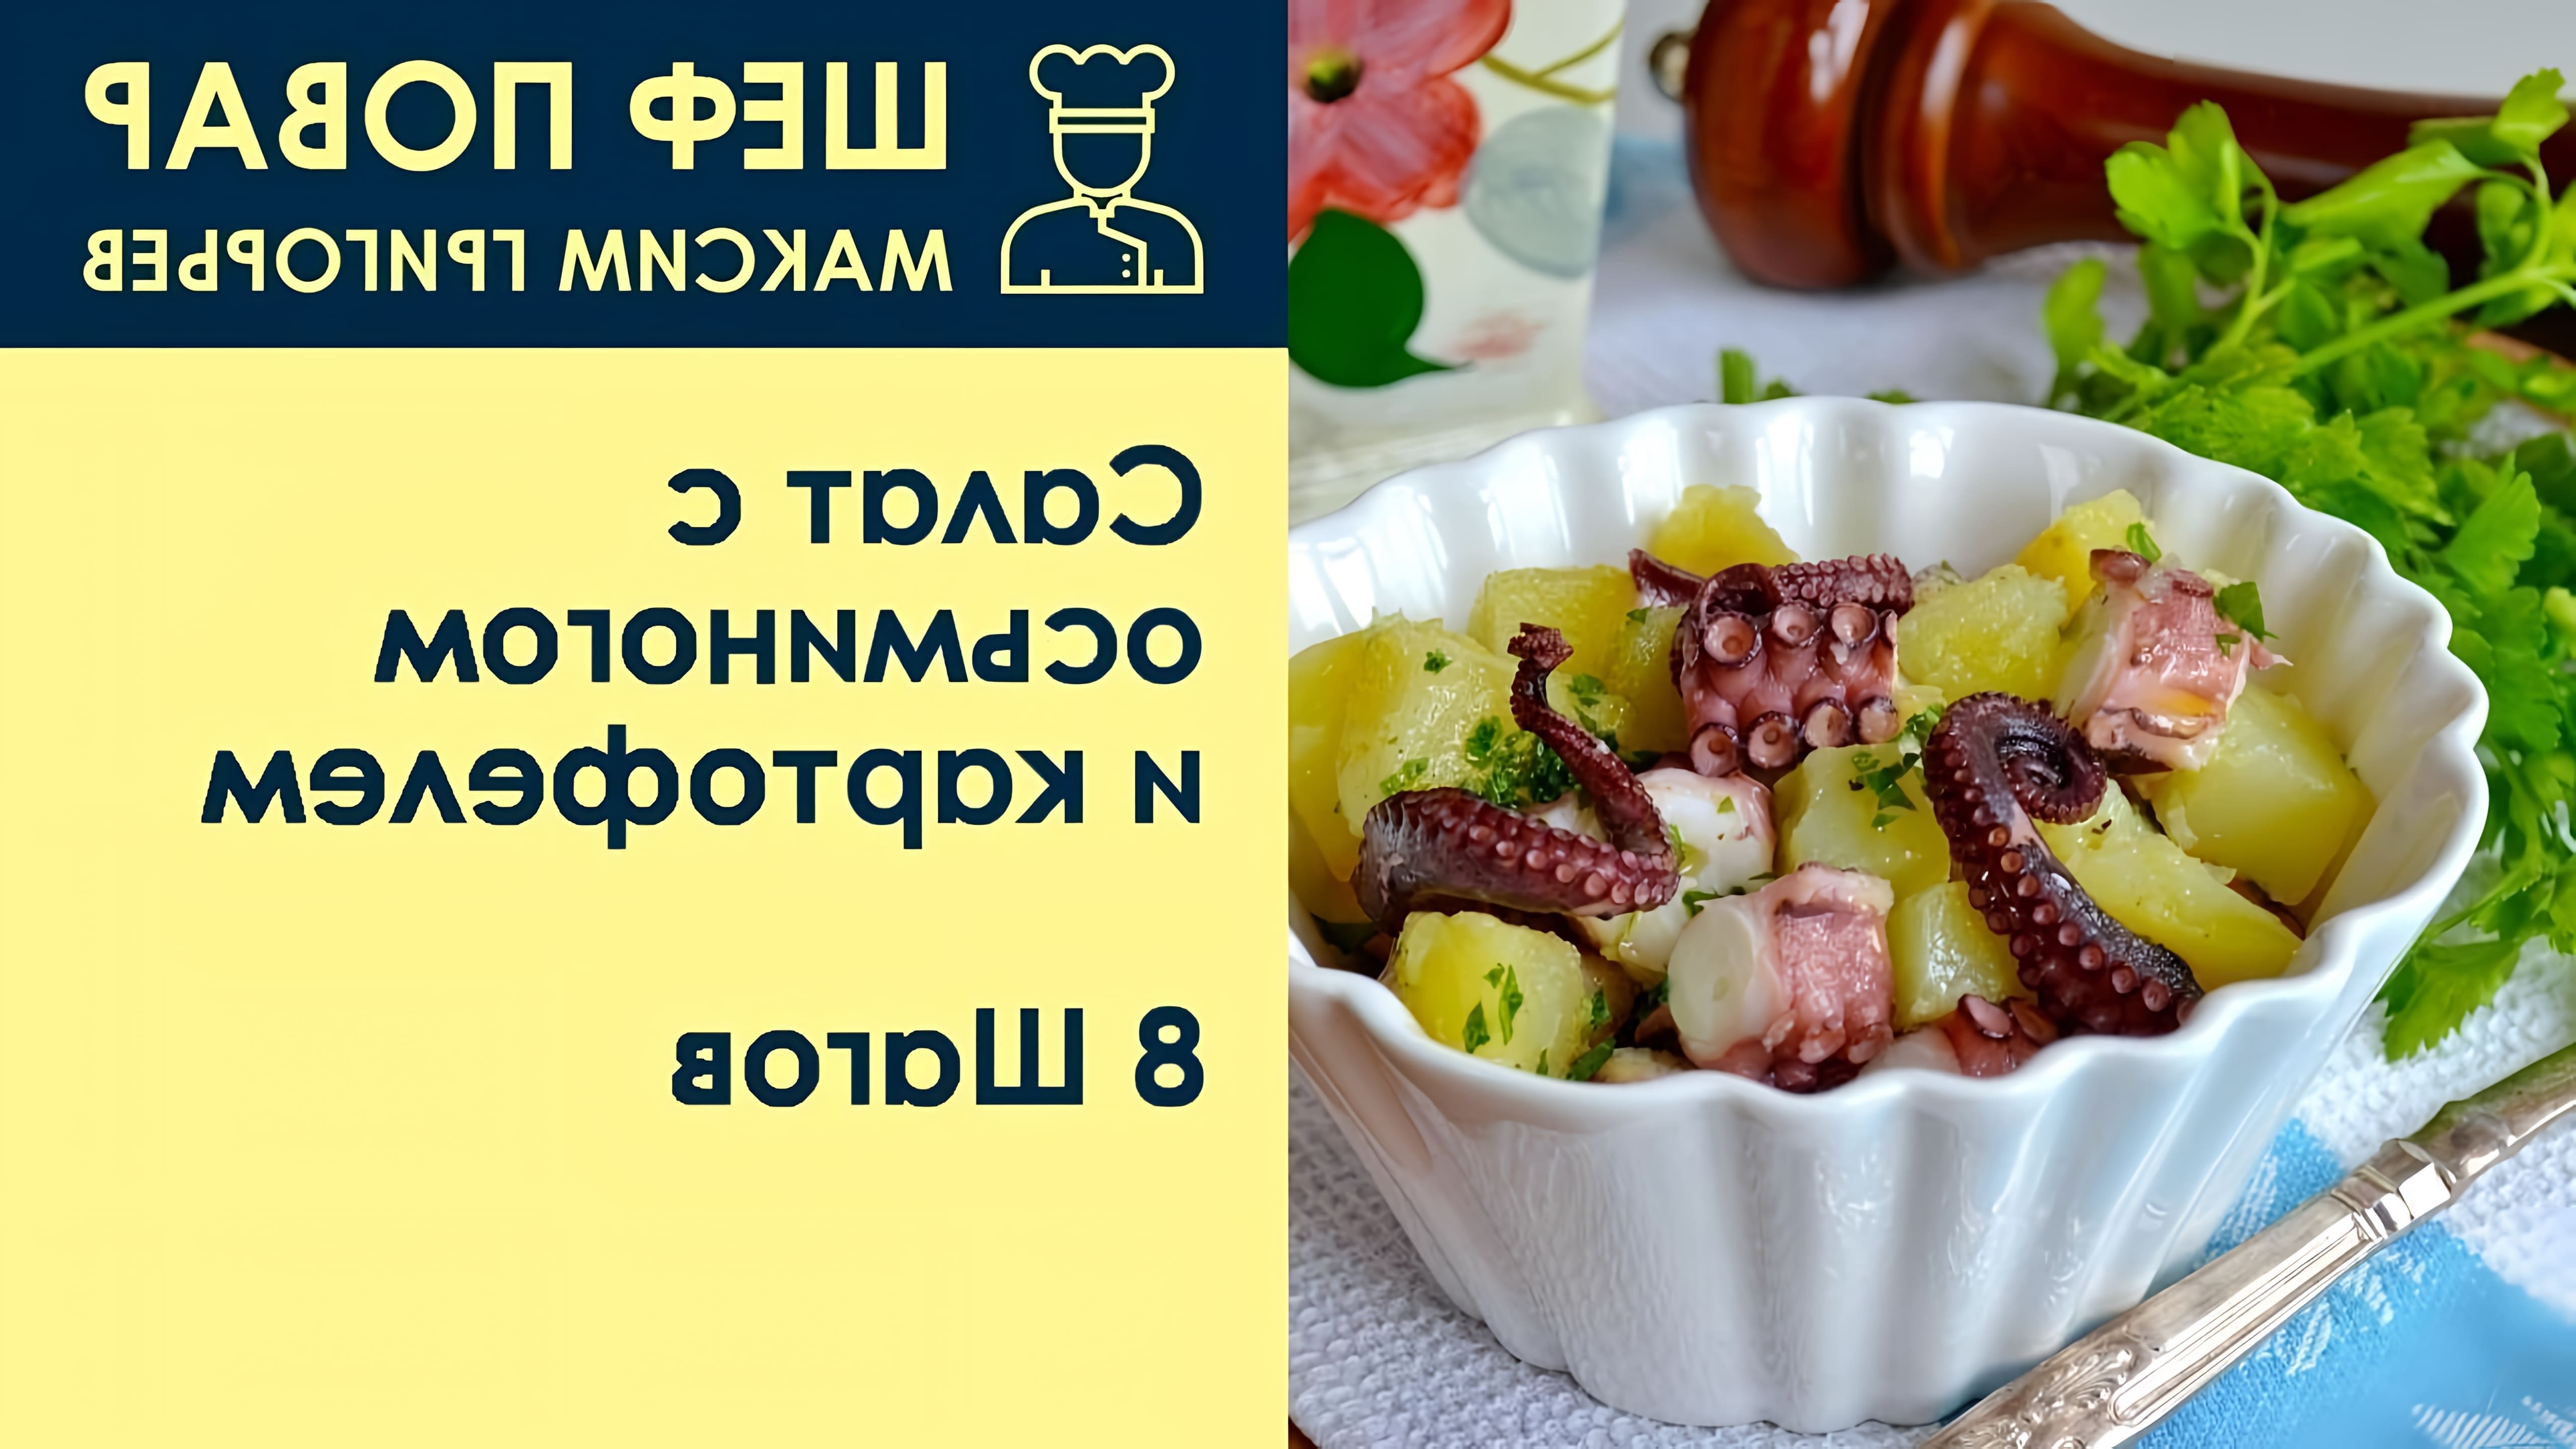 Видео представляет собой рецепт приготовления салата с осьминогом и картофелем от шеф-повара Максима Григорьева